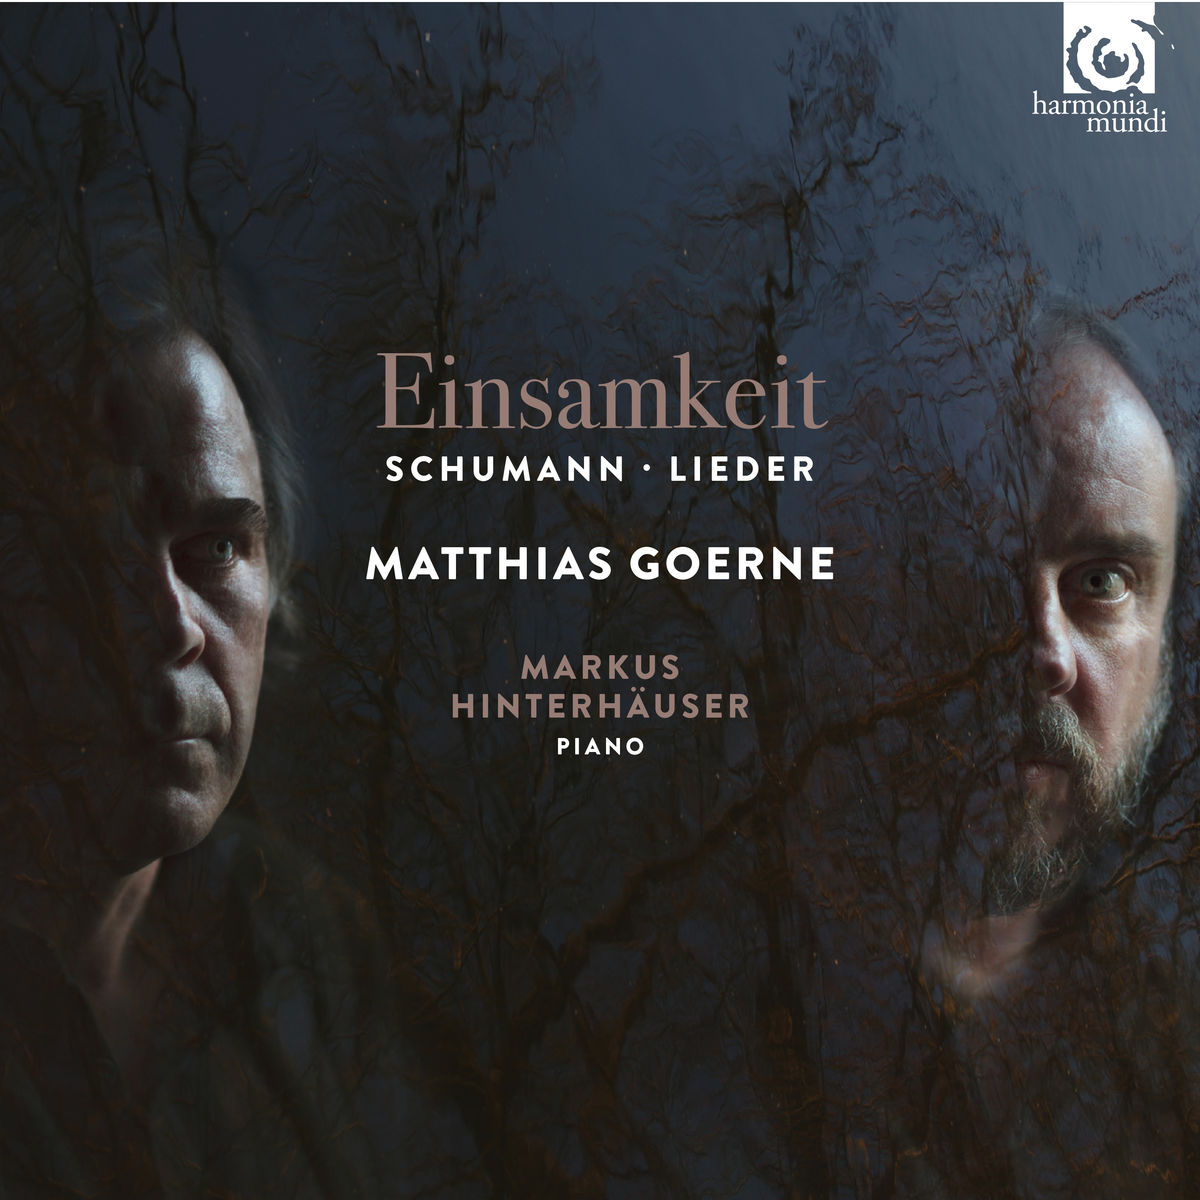 Matthias Goerne & Markus Hinterhauser - Schumann: Einsamkeit - Lieder (2017) [Qobuz FLAC 24bit/96kHz]